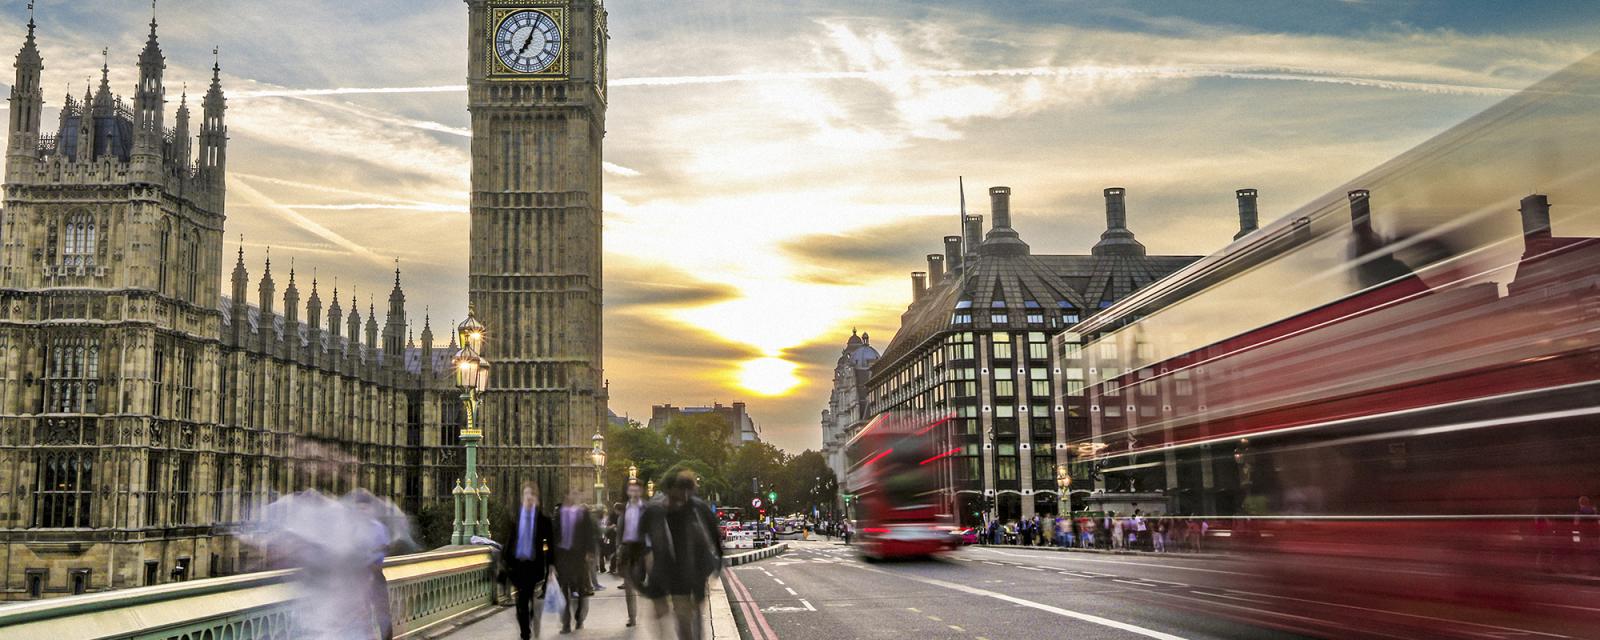 Groot-Brittannië Bucketlist: de vier leukste steden  